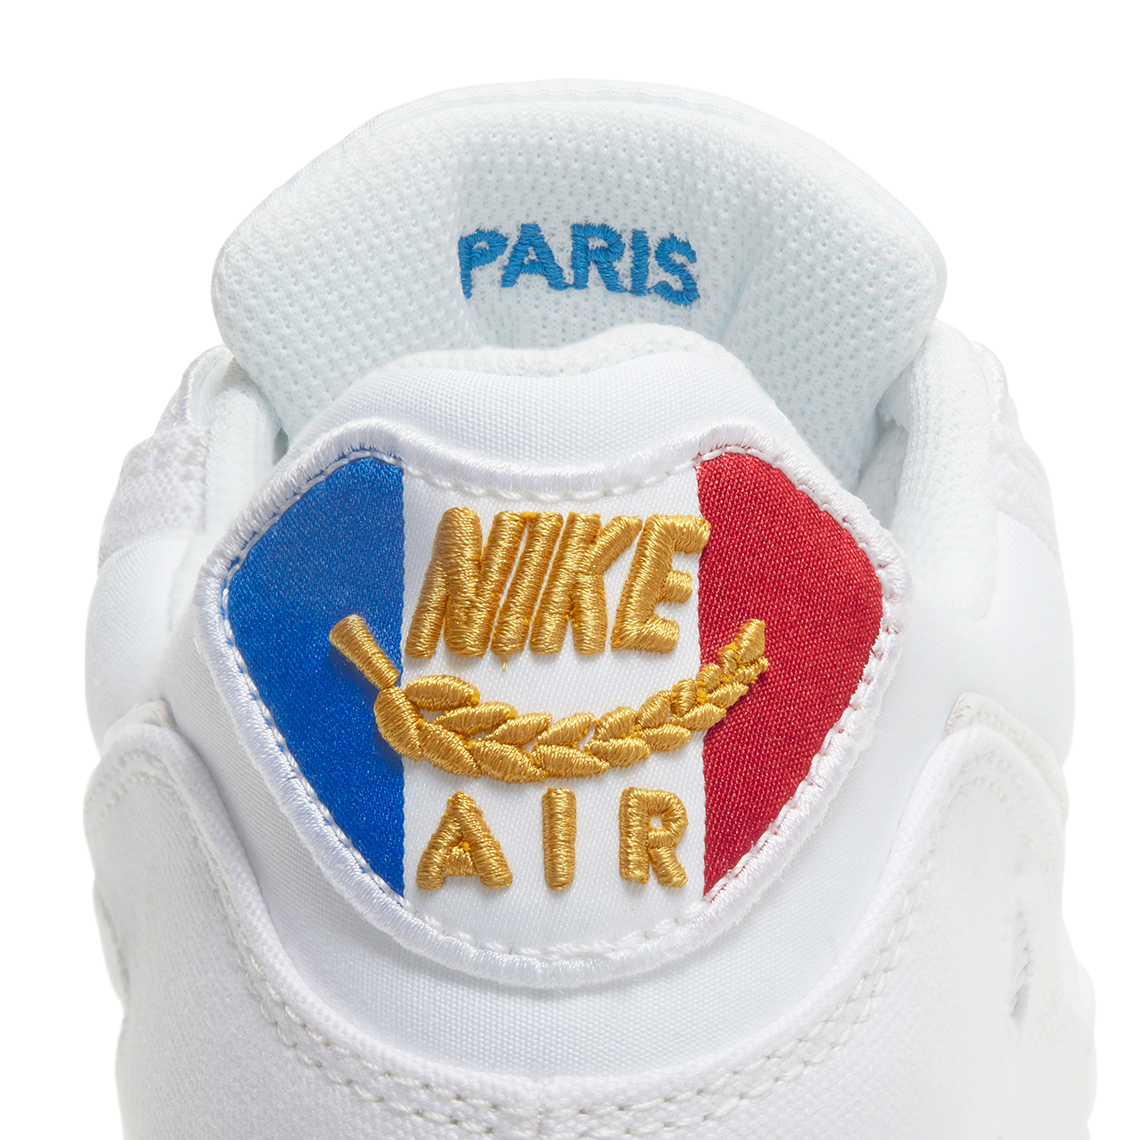 Nike Air Max 90 City Pack Paris Release Date 1